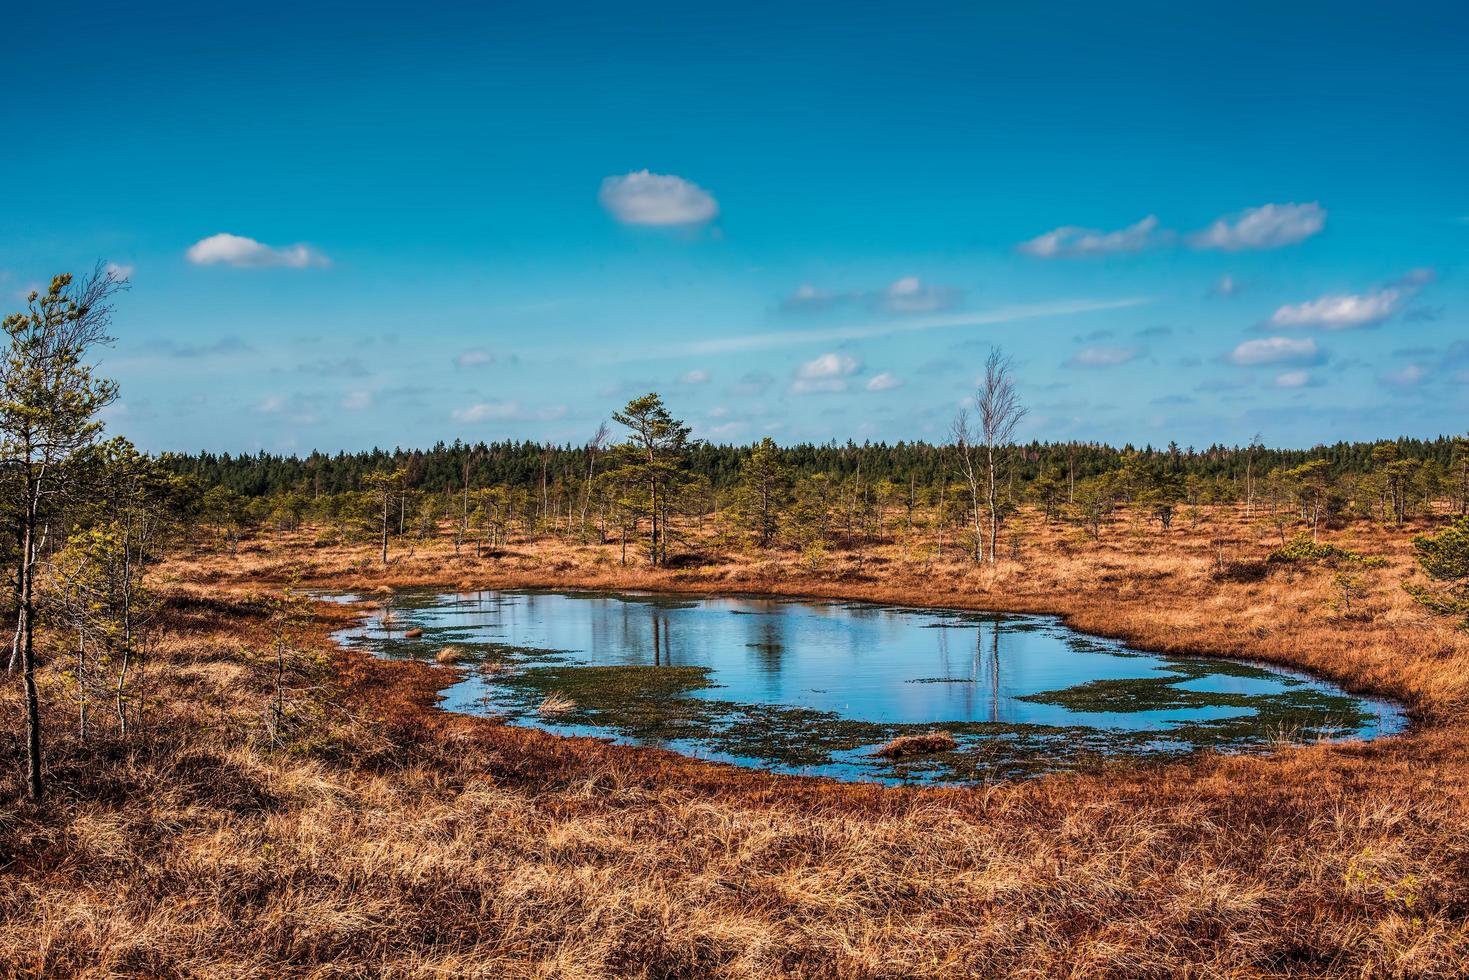 Marécage, arbres et ciel bleu nuageux dans le parc national de Kemeri en Lettonie photo